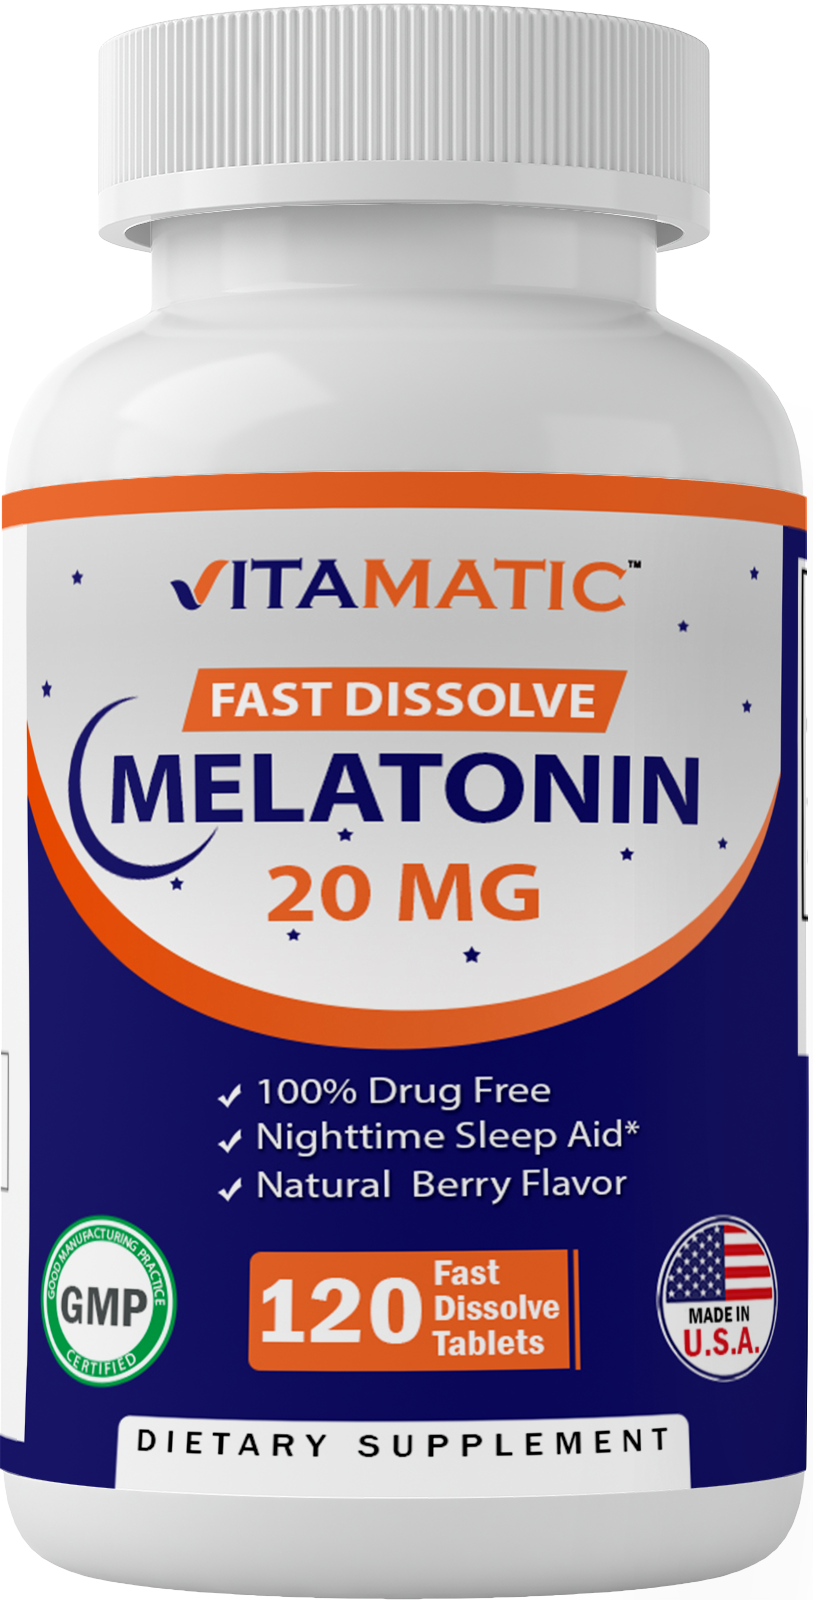 Vitamatic Melatonin 20 Mg Fast Dissolve 120 Tablets - Nighttime Sleep Aid